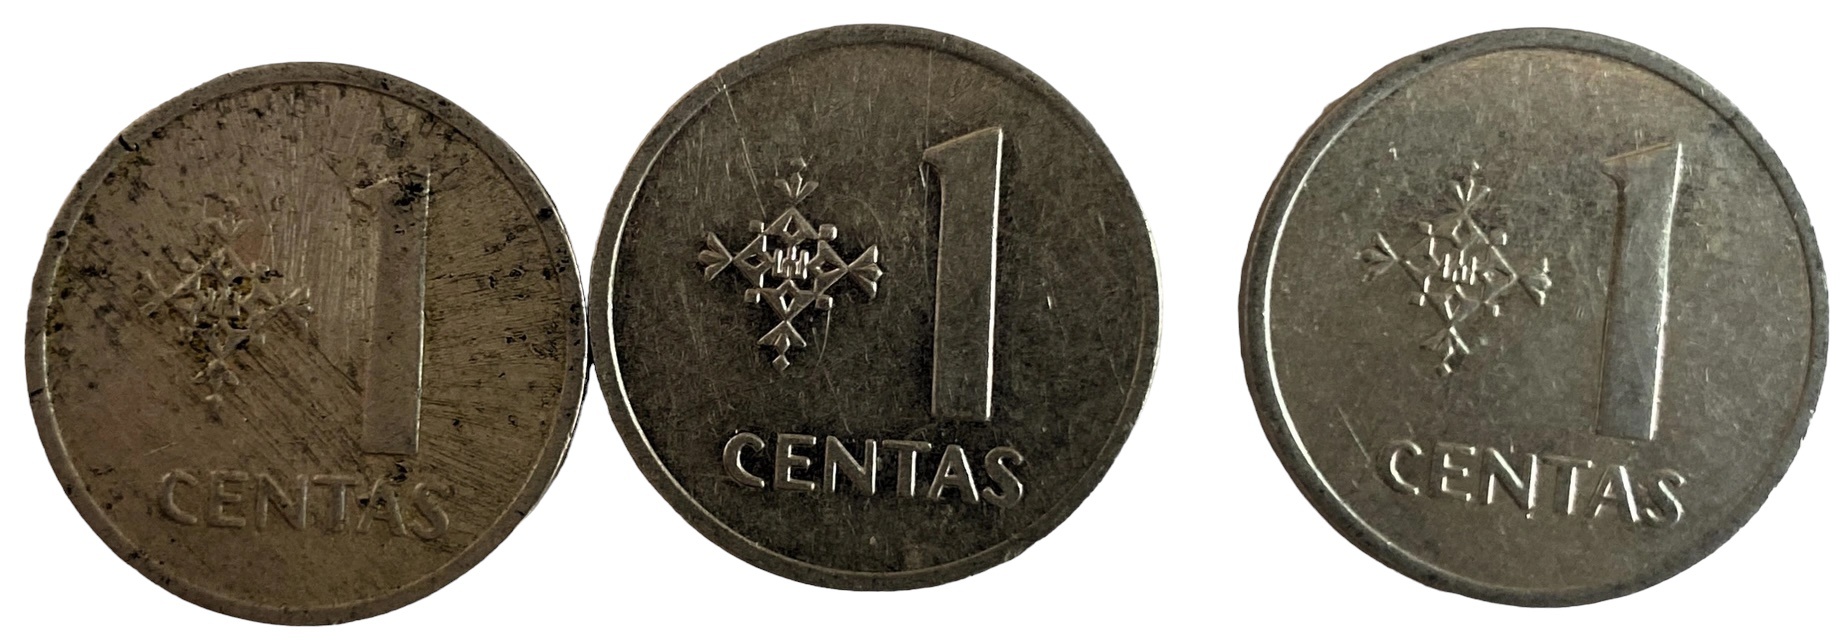 Иностранная монета Литва 1991 год 1 цент